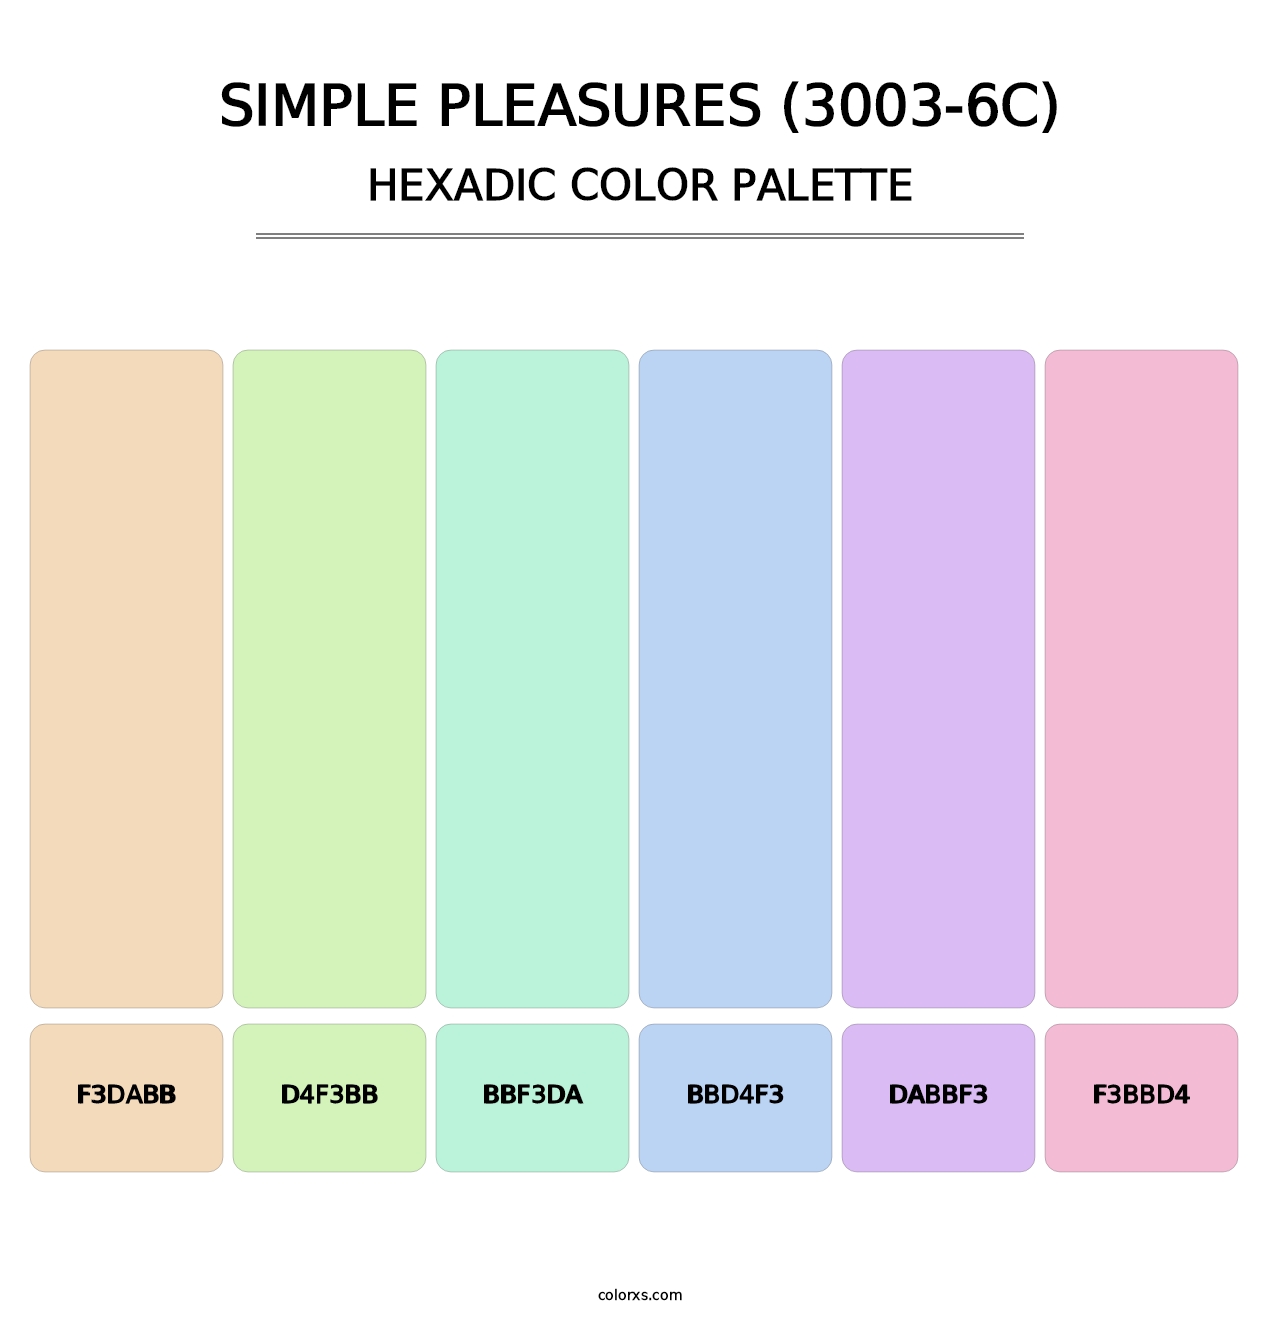 Simple Pleasures (3003-6C) - Hexadic Color Palette